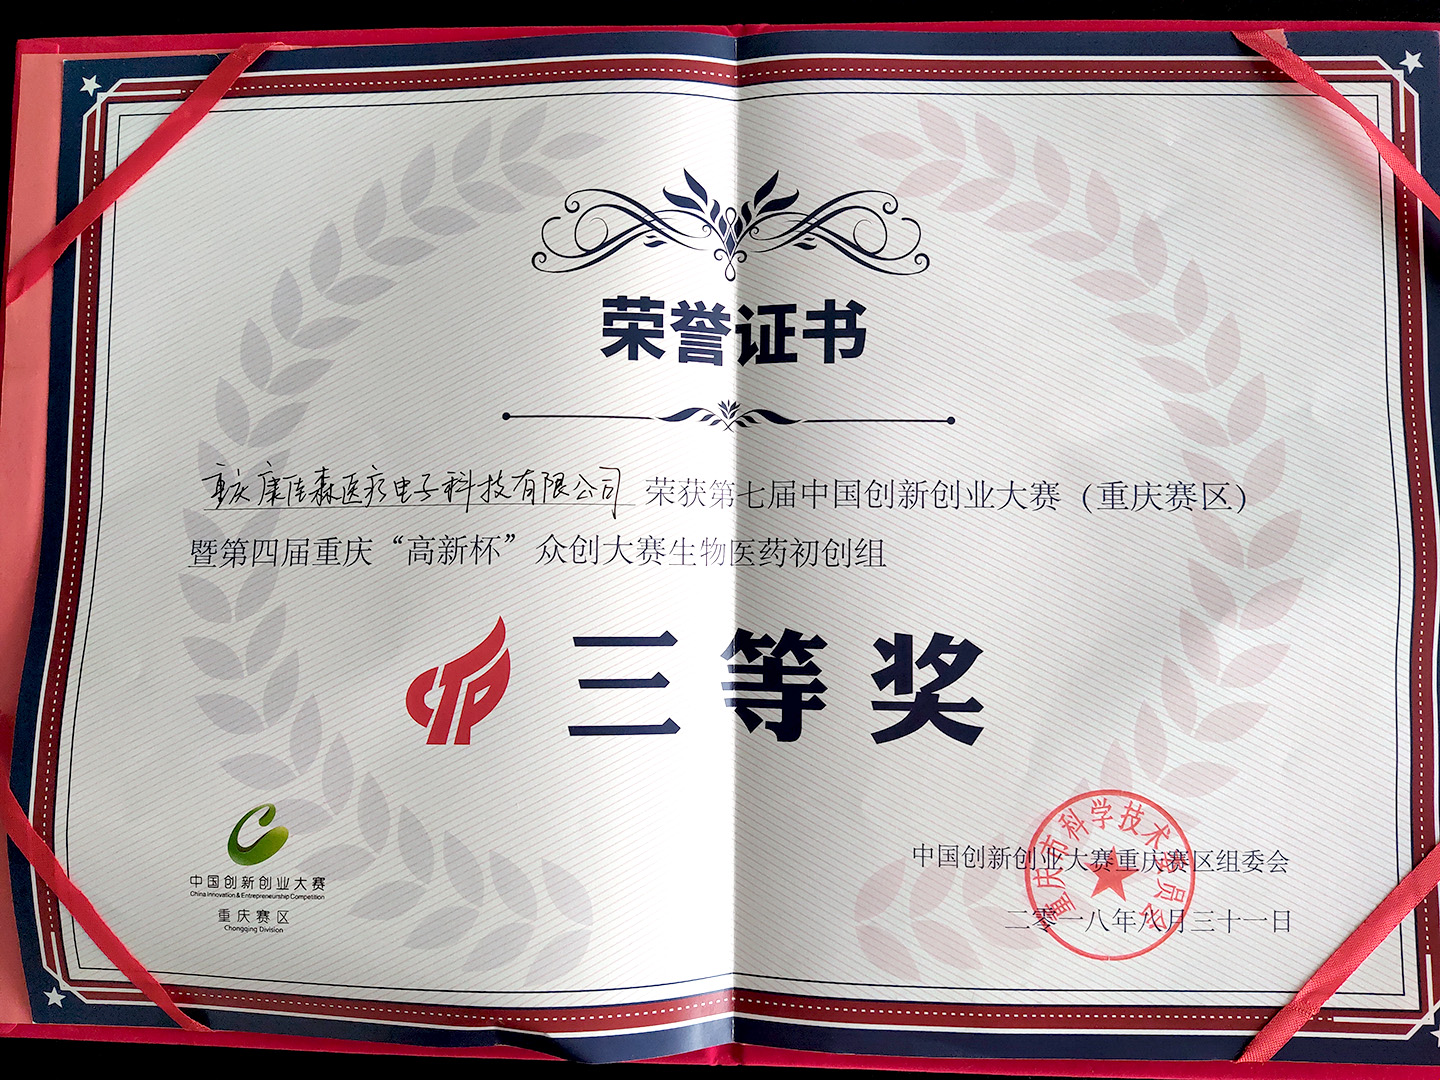 第七屆中國雙創大賽（重慶賽區）暨第四屆重慶“高新杯”眾創大賽生物醫藥初創組三等獎1 